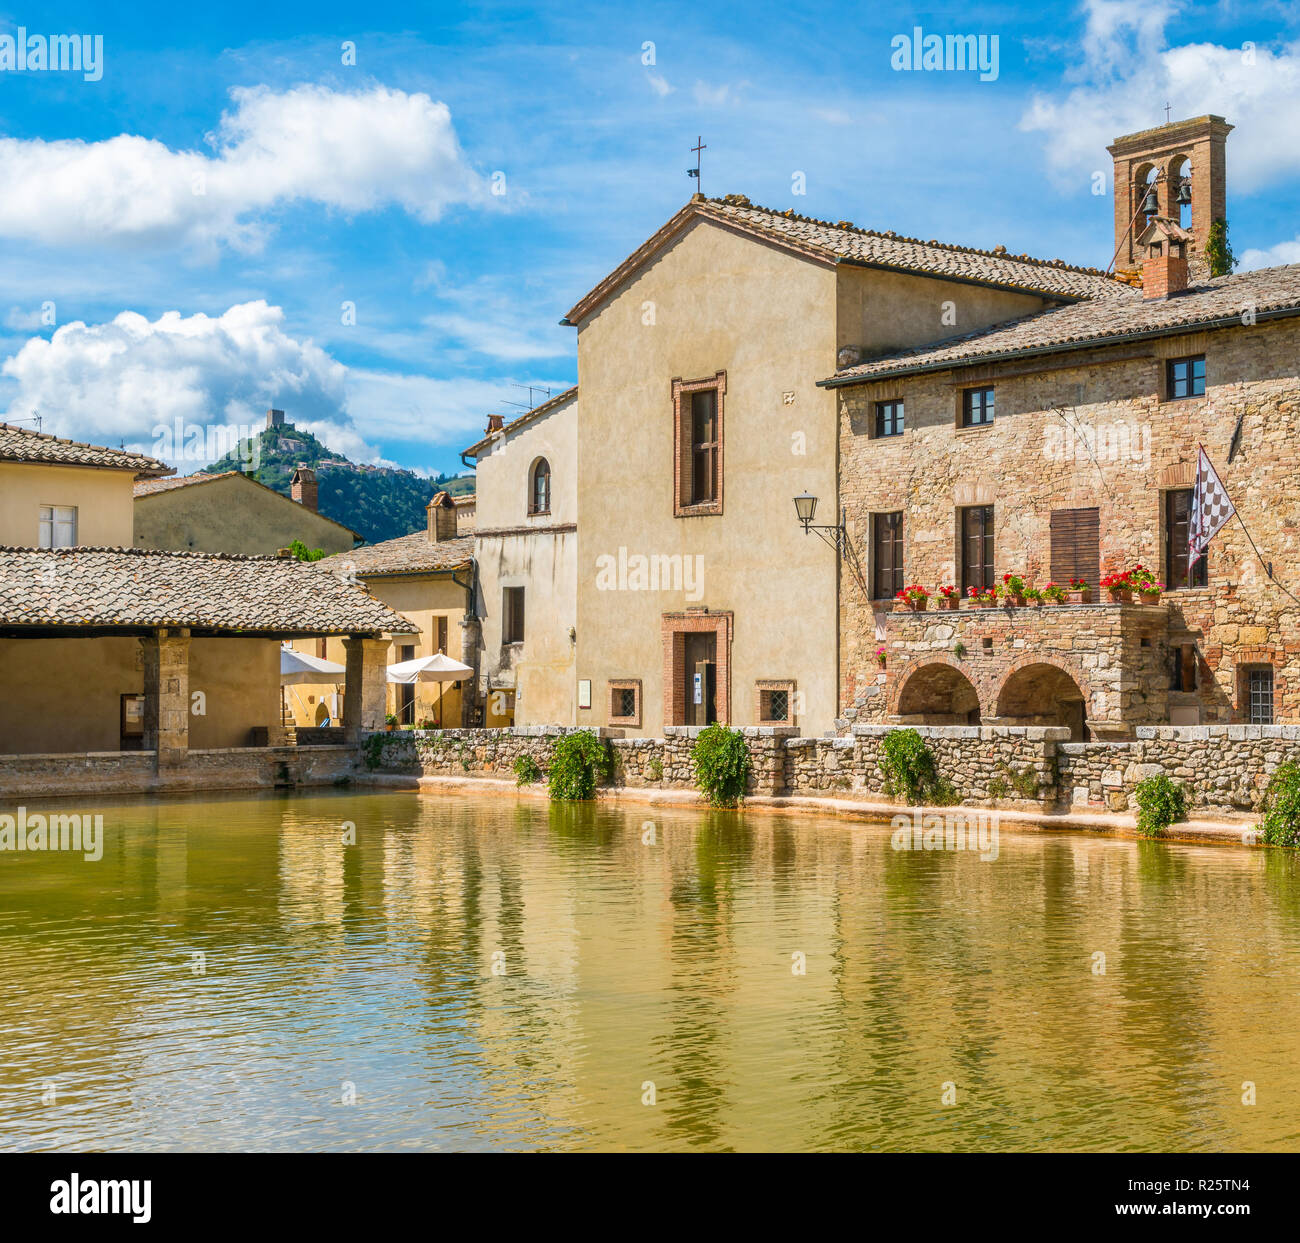 Il pittoresco Bagno Vignoni, nei pressi di San Quirico d'Orcia, in provincia di Siena. Toscana, Italia. Foto Stock